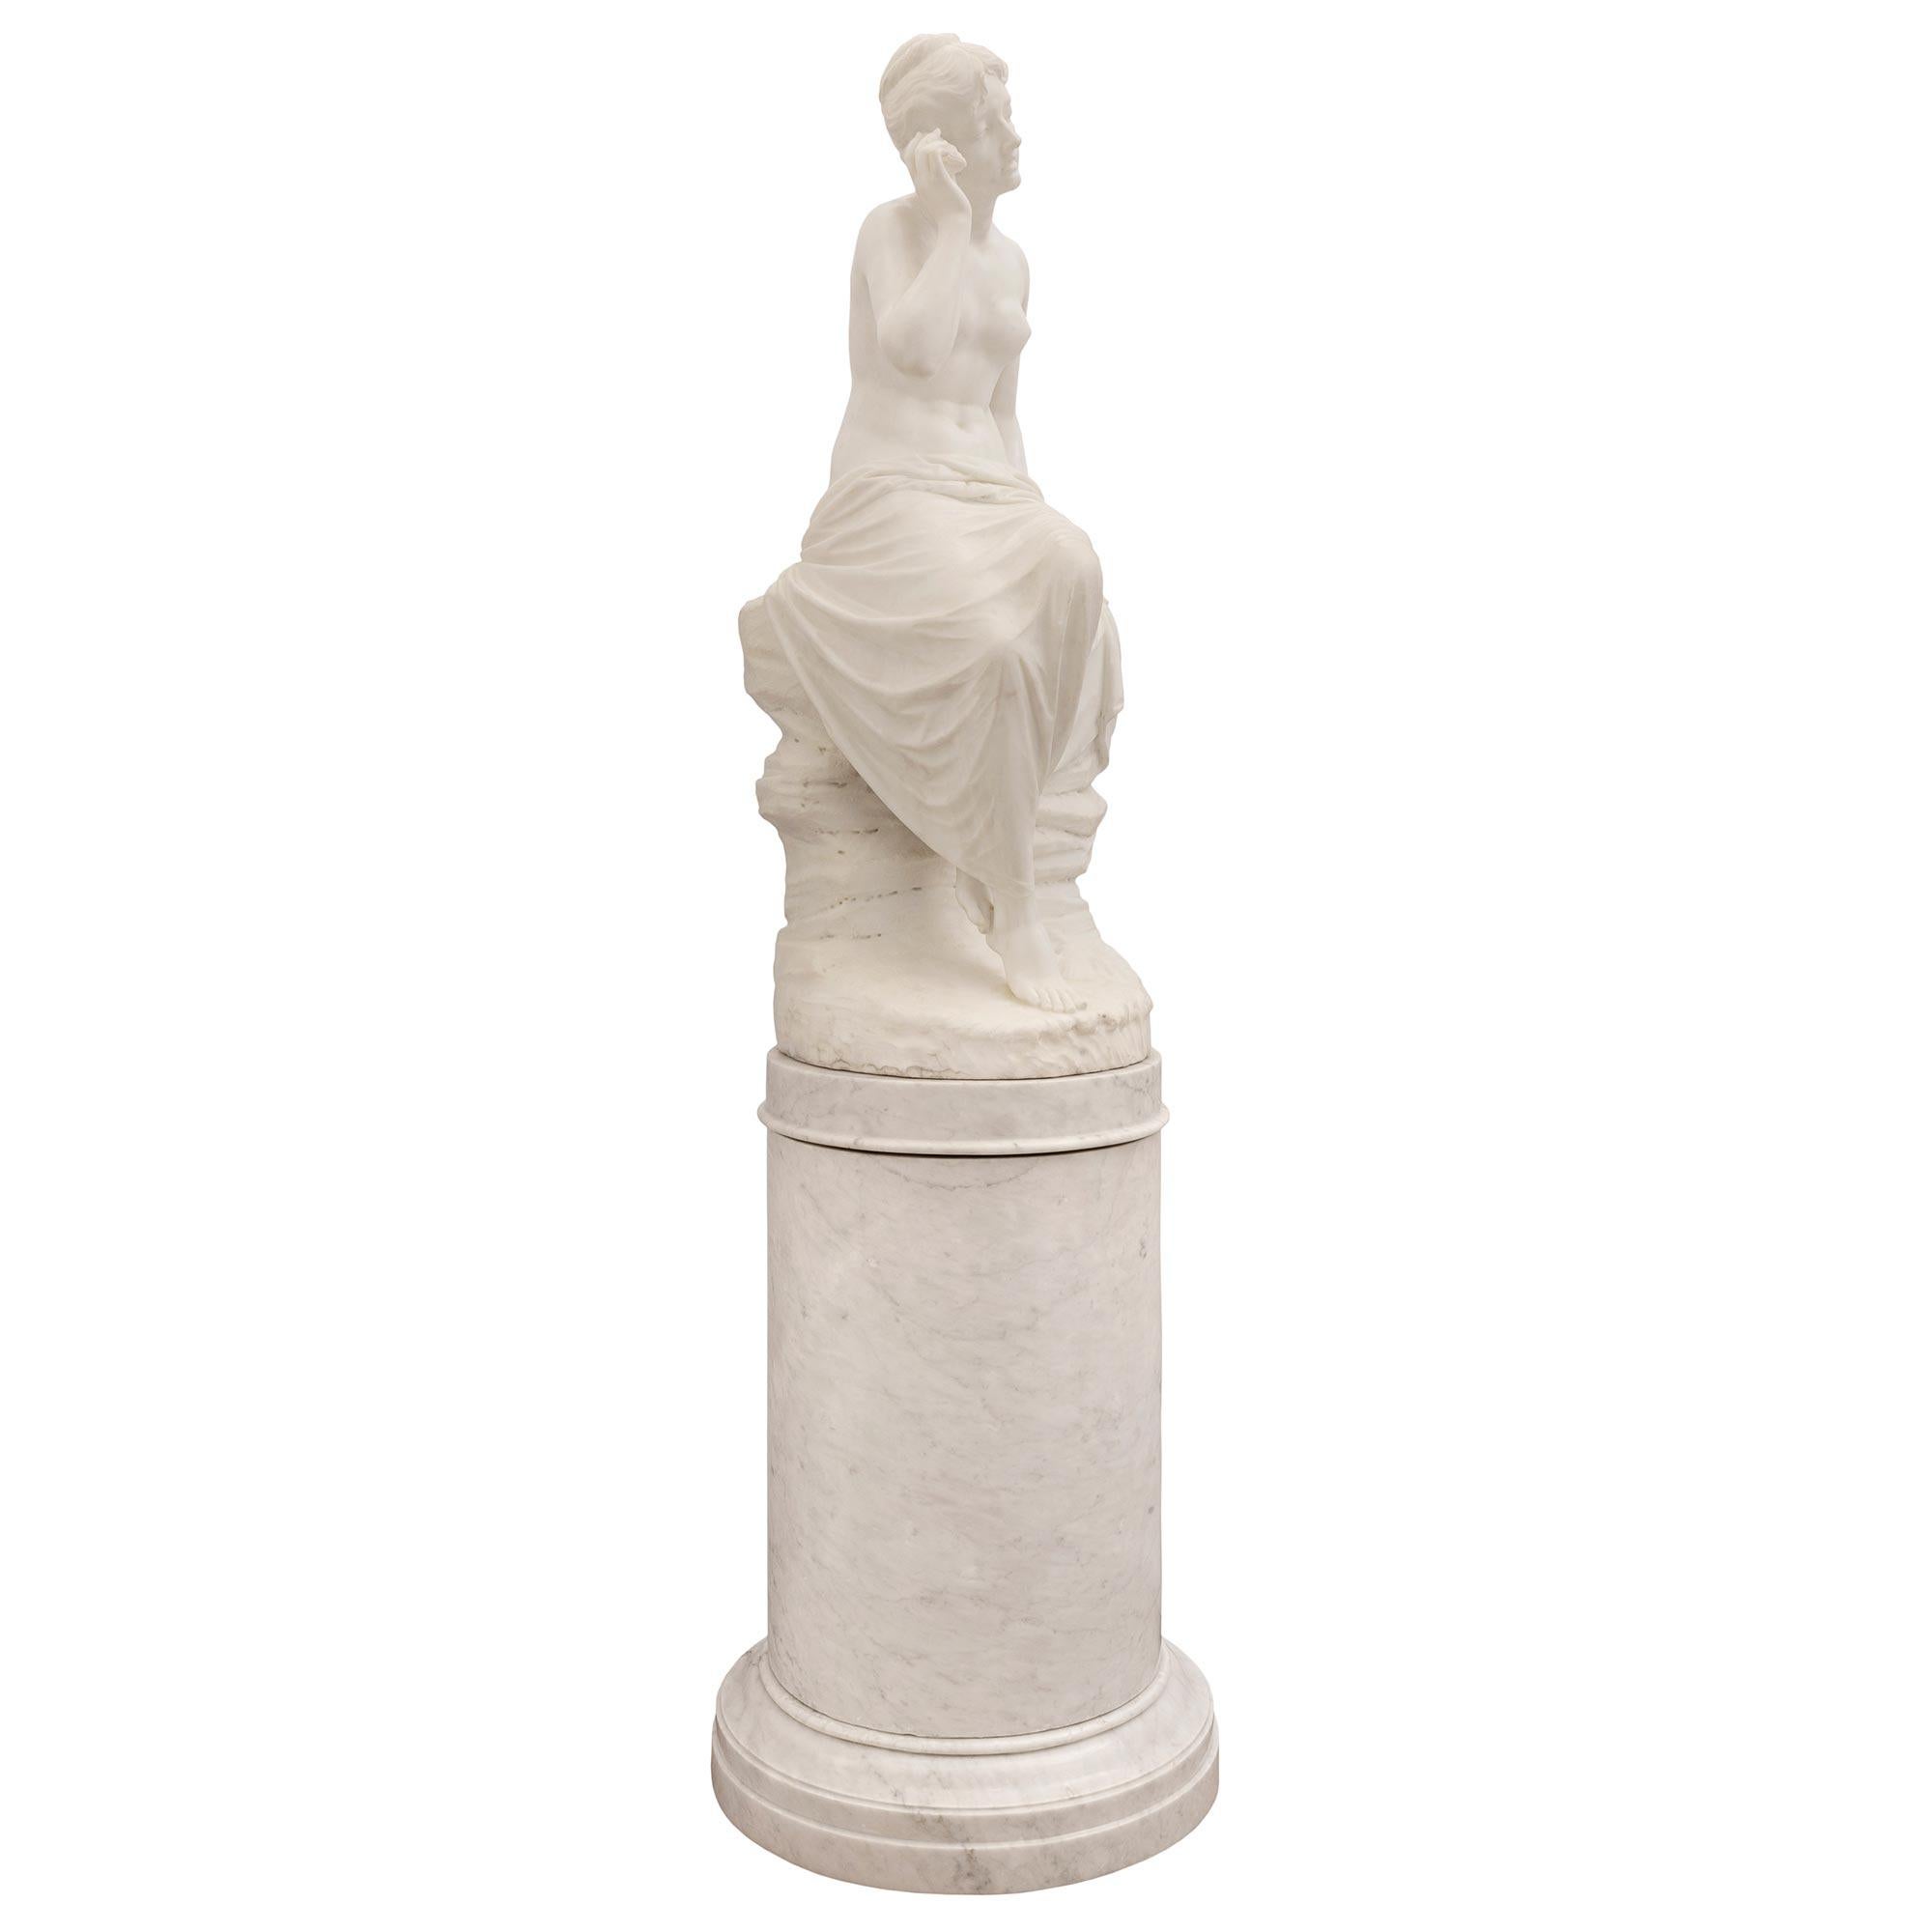 Eine beeindruckende Statue aus weißem Carrara-Marmor in Museumsqualität aus dem 19. Jahrhundert, die ein Mädchen mit einer Muschel auf ihrem Originalsockel darstellt. Die Statue wird von der originalen Sockelsäule mit feinem, gesprenkeltem Dekor an